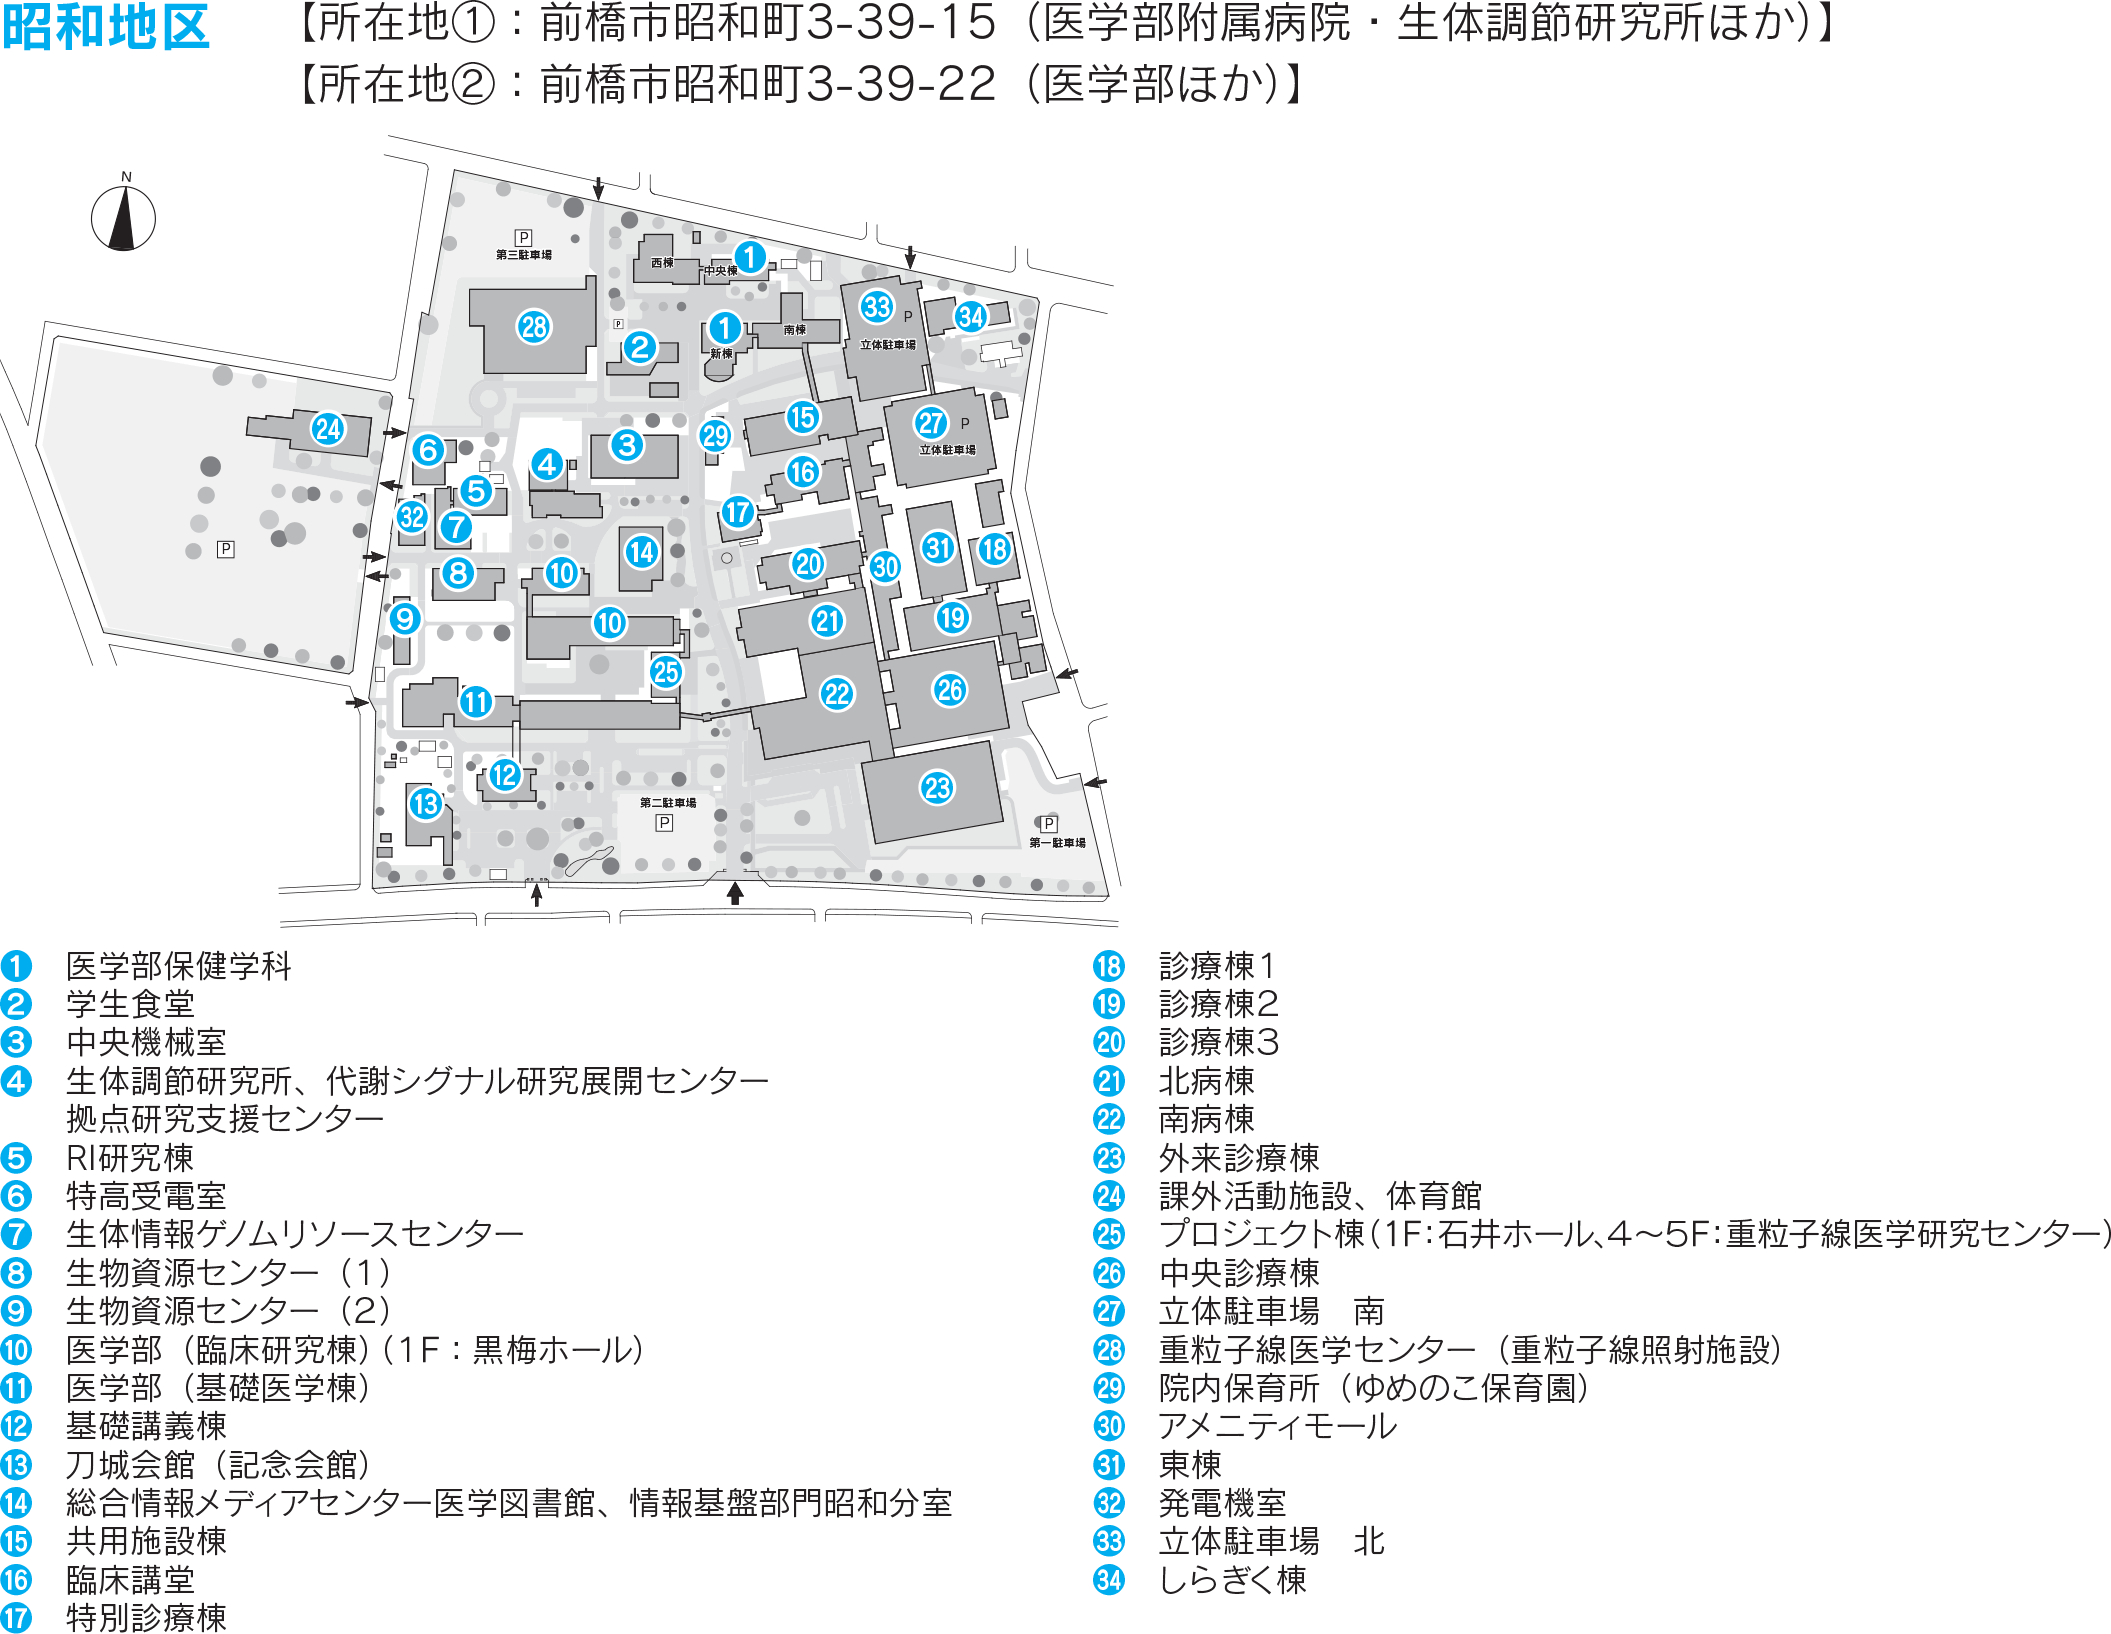 昭和キャンパス構内図